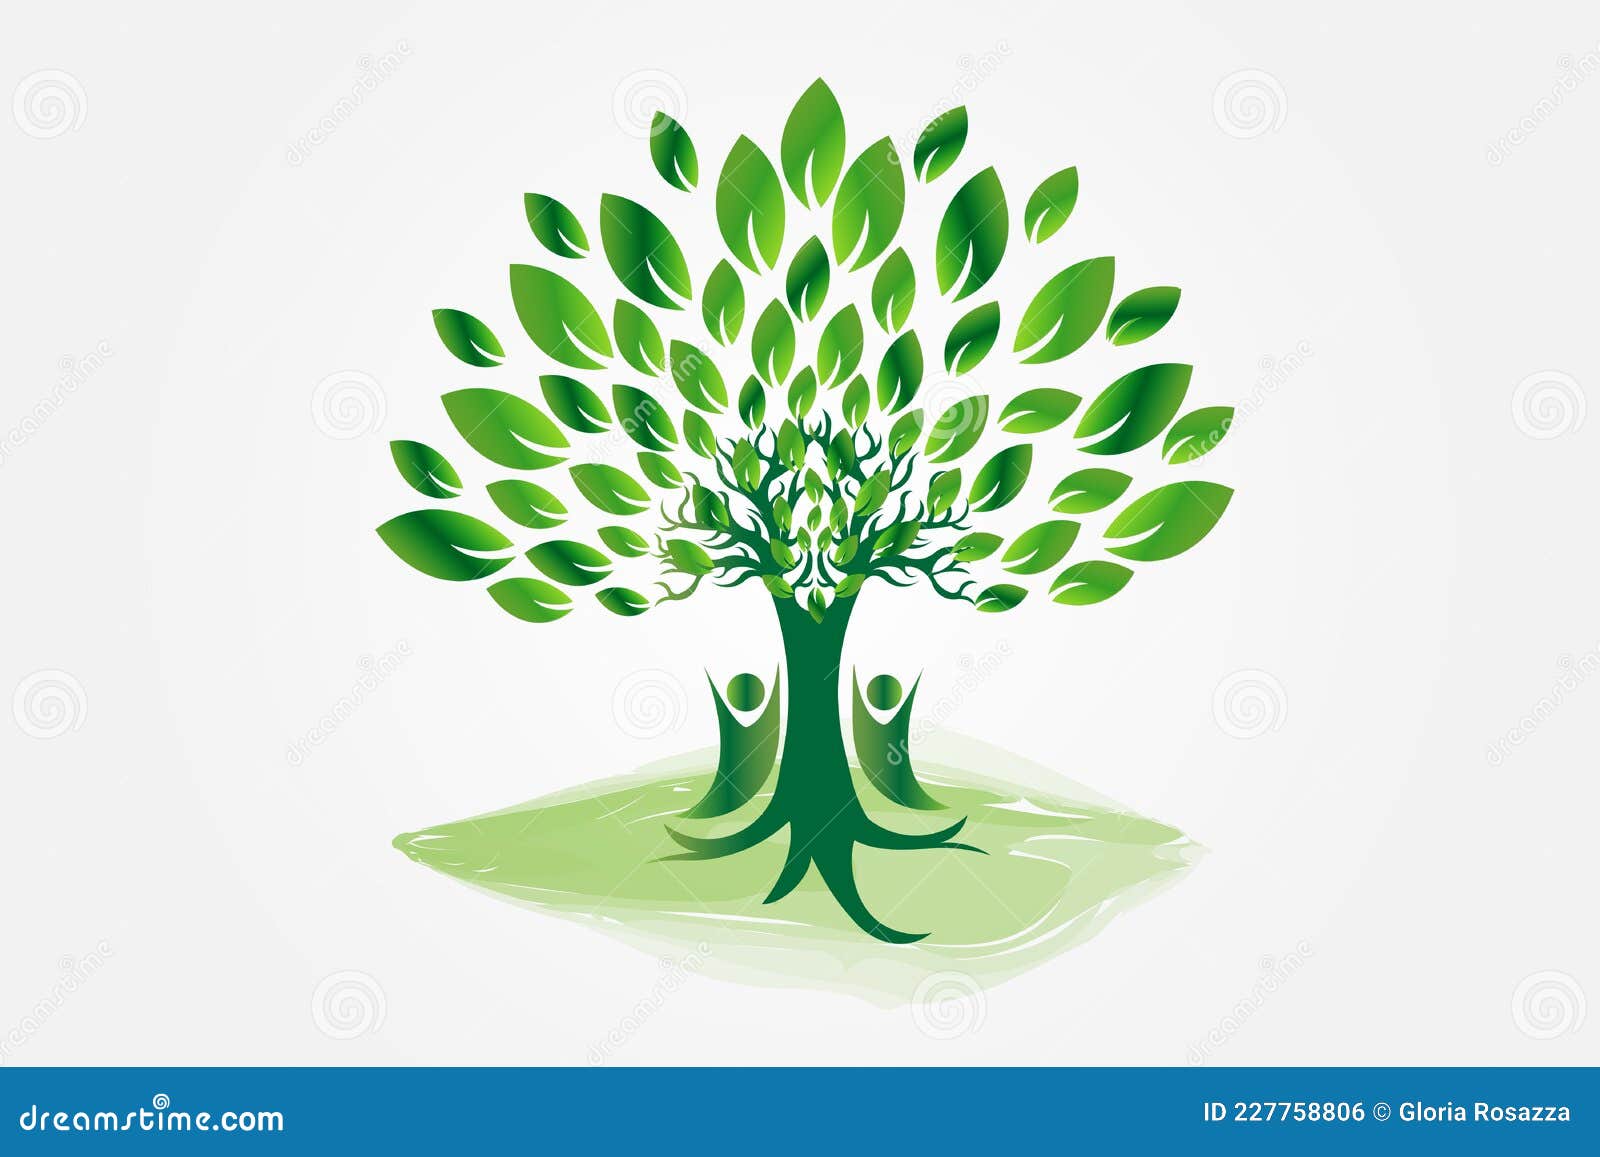 Symbolique : que signifie un logo avec un arbre ? - Graphiste Blog